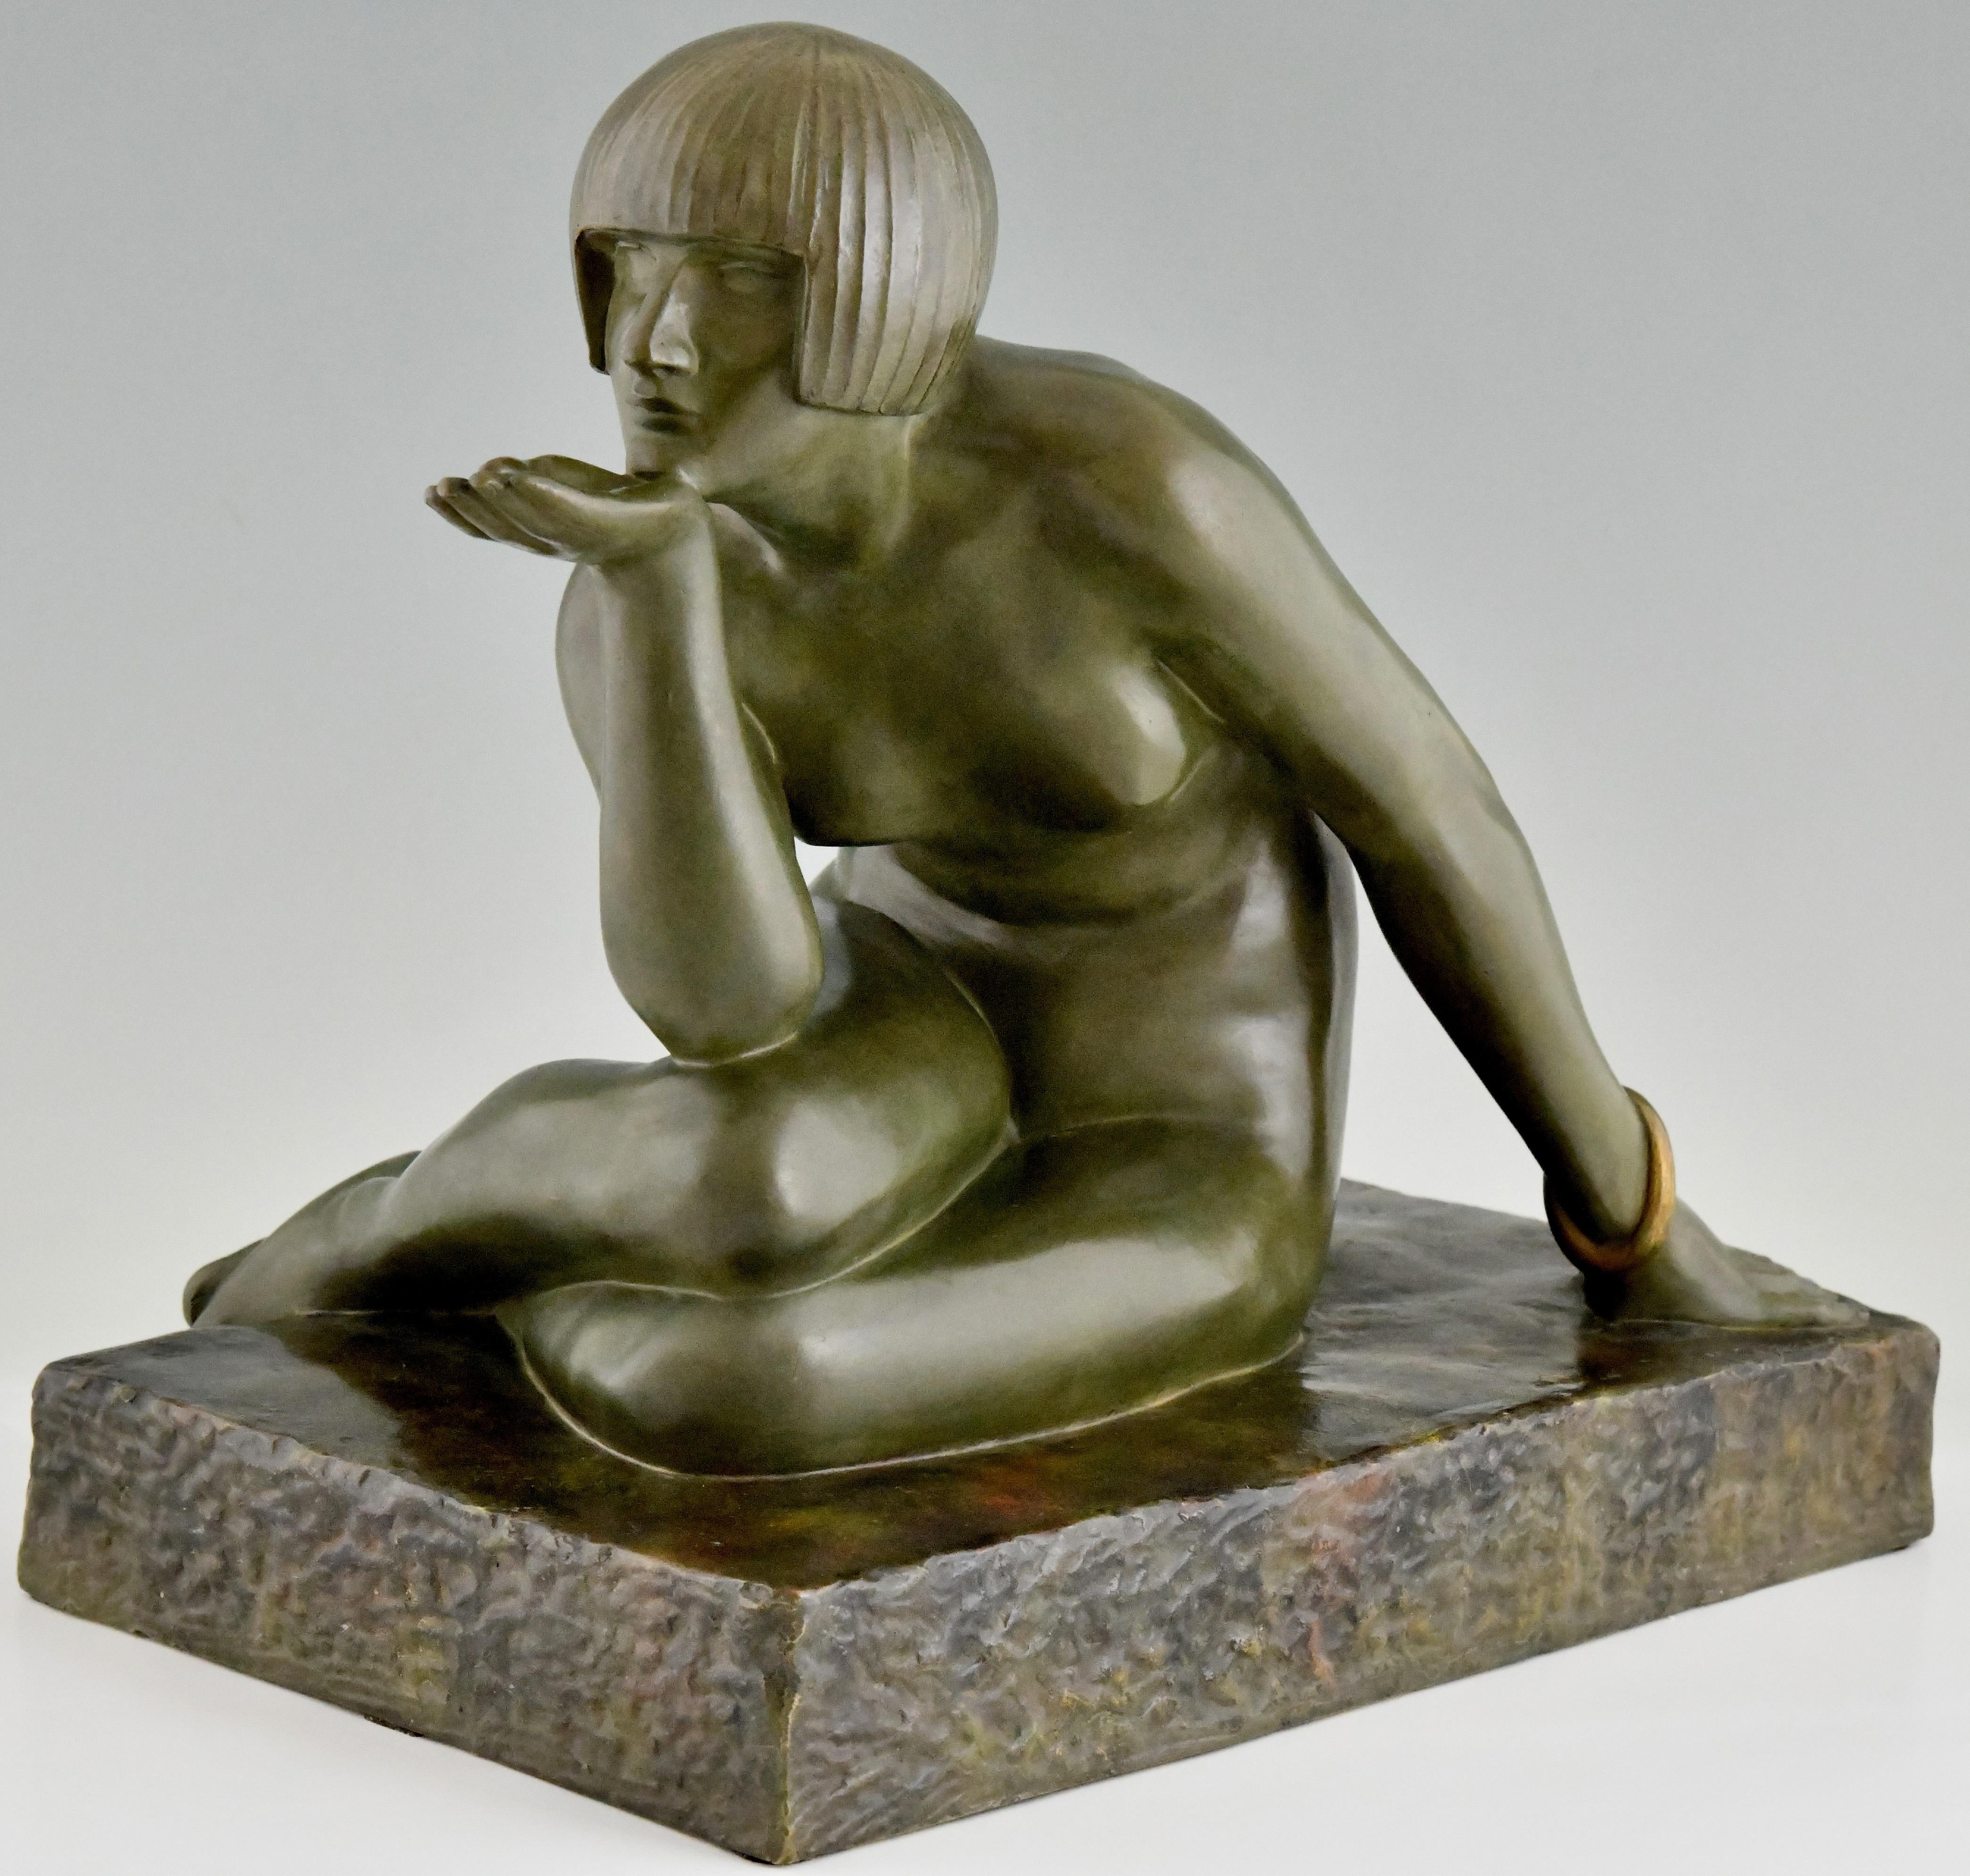 Enigma Art Deco bronze sculpture assis nu avec bracelet par Maurice Guiraud Rivière.
Avec le cachet de la fonderie Les Neveux de Lehmann Paris. Numéroté. 
Présenté à l'exposition de 1925.

Cette sculpture est illustrée dans :
Sculpture Art déco de